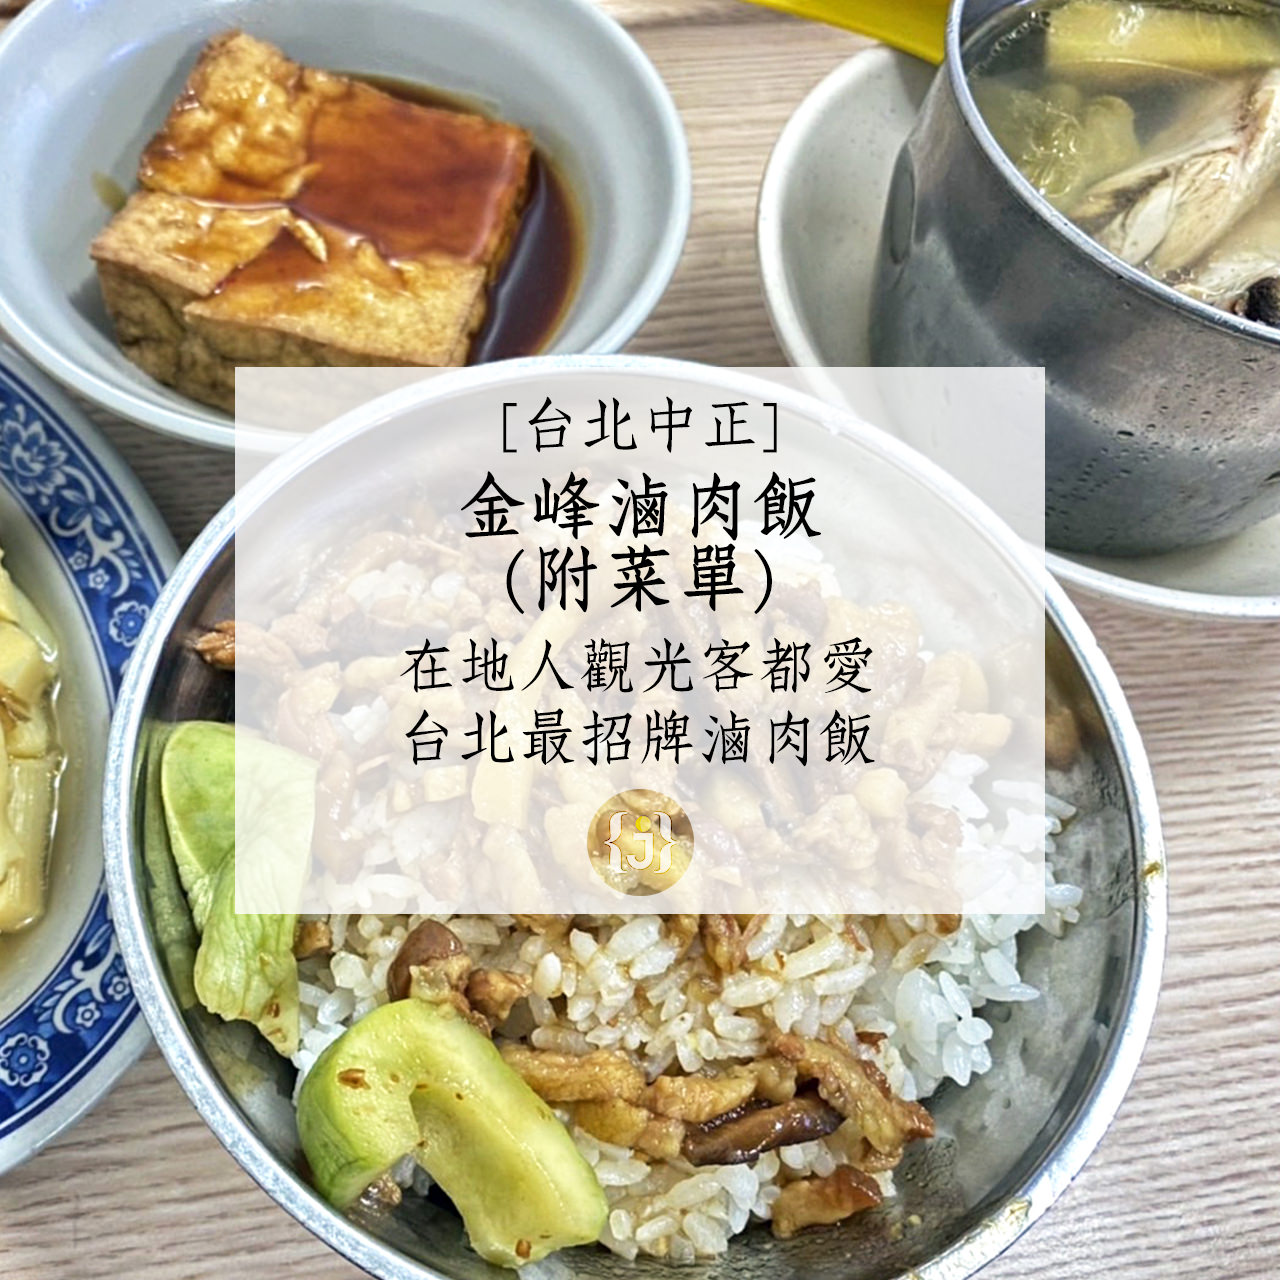 【台北中正】金峰魯肉飯附菜單在地人觀光客都愛 台北最招牌滷肉飯